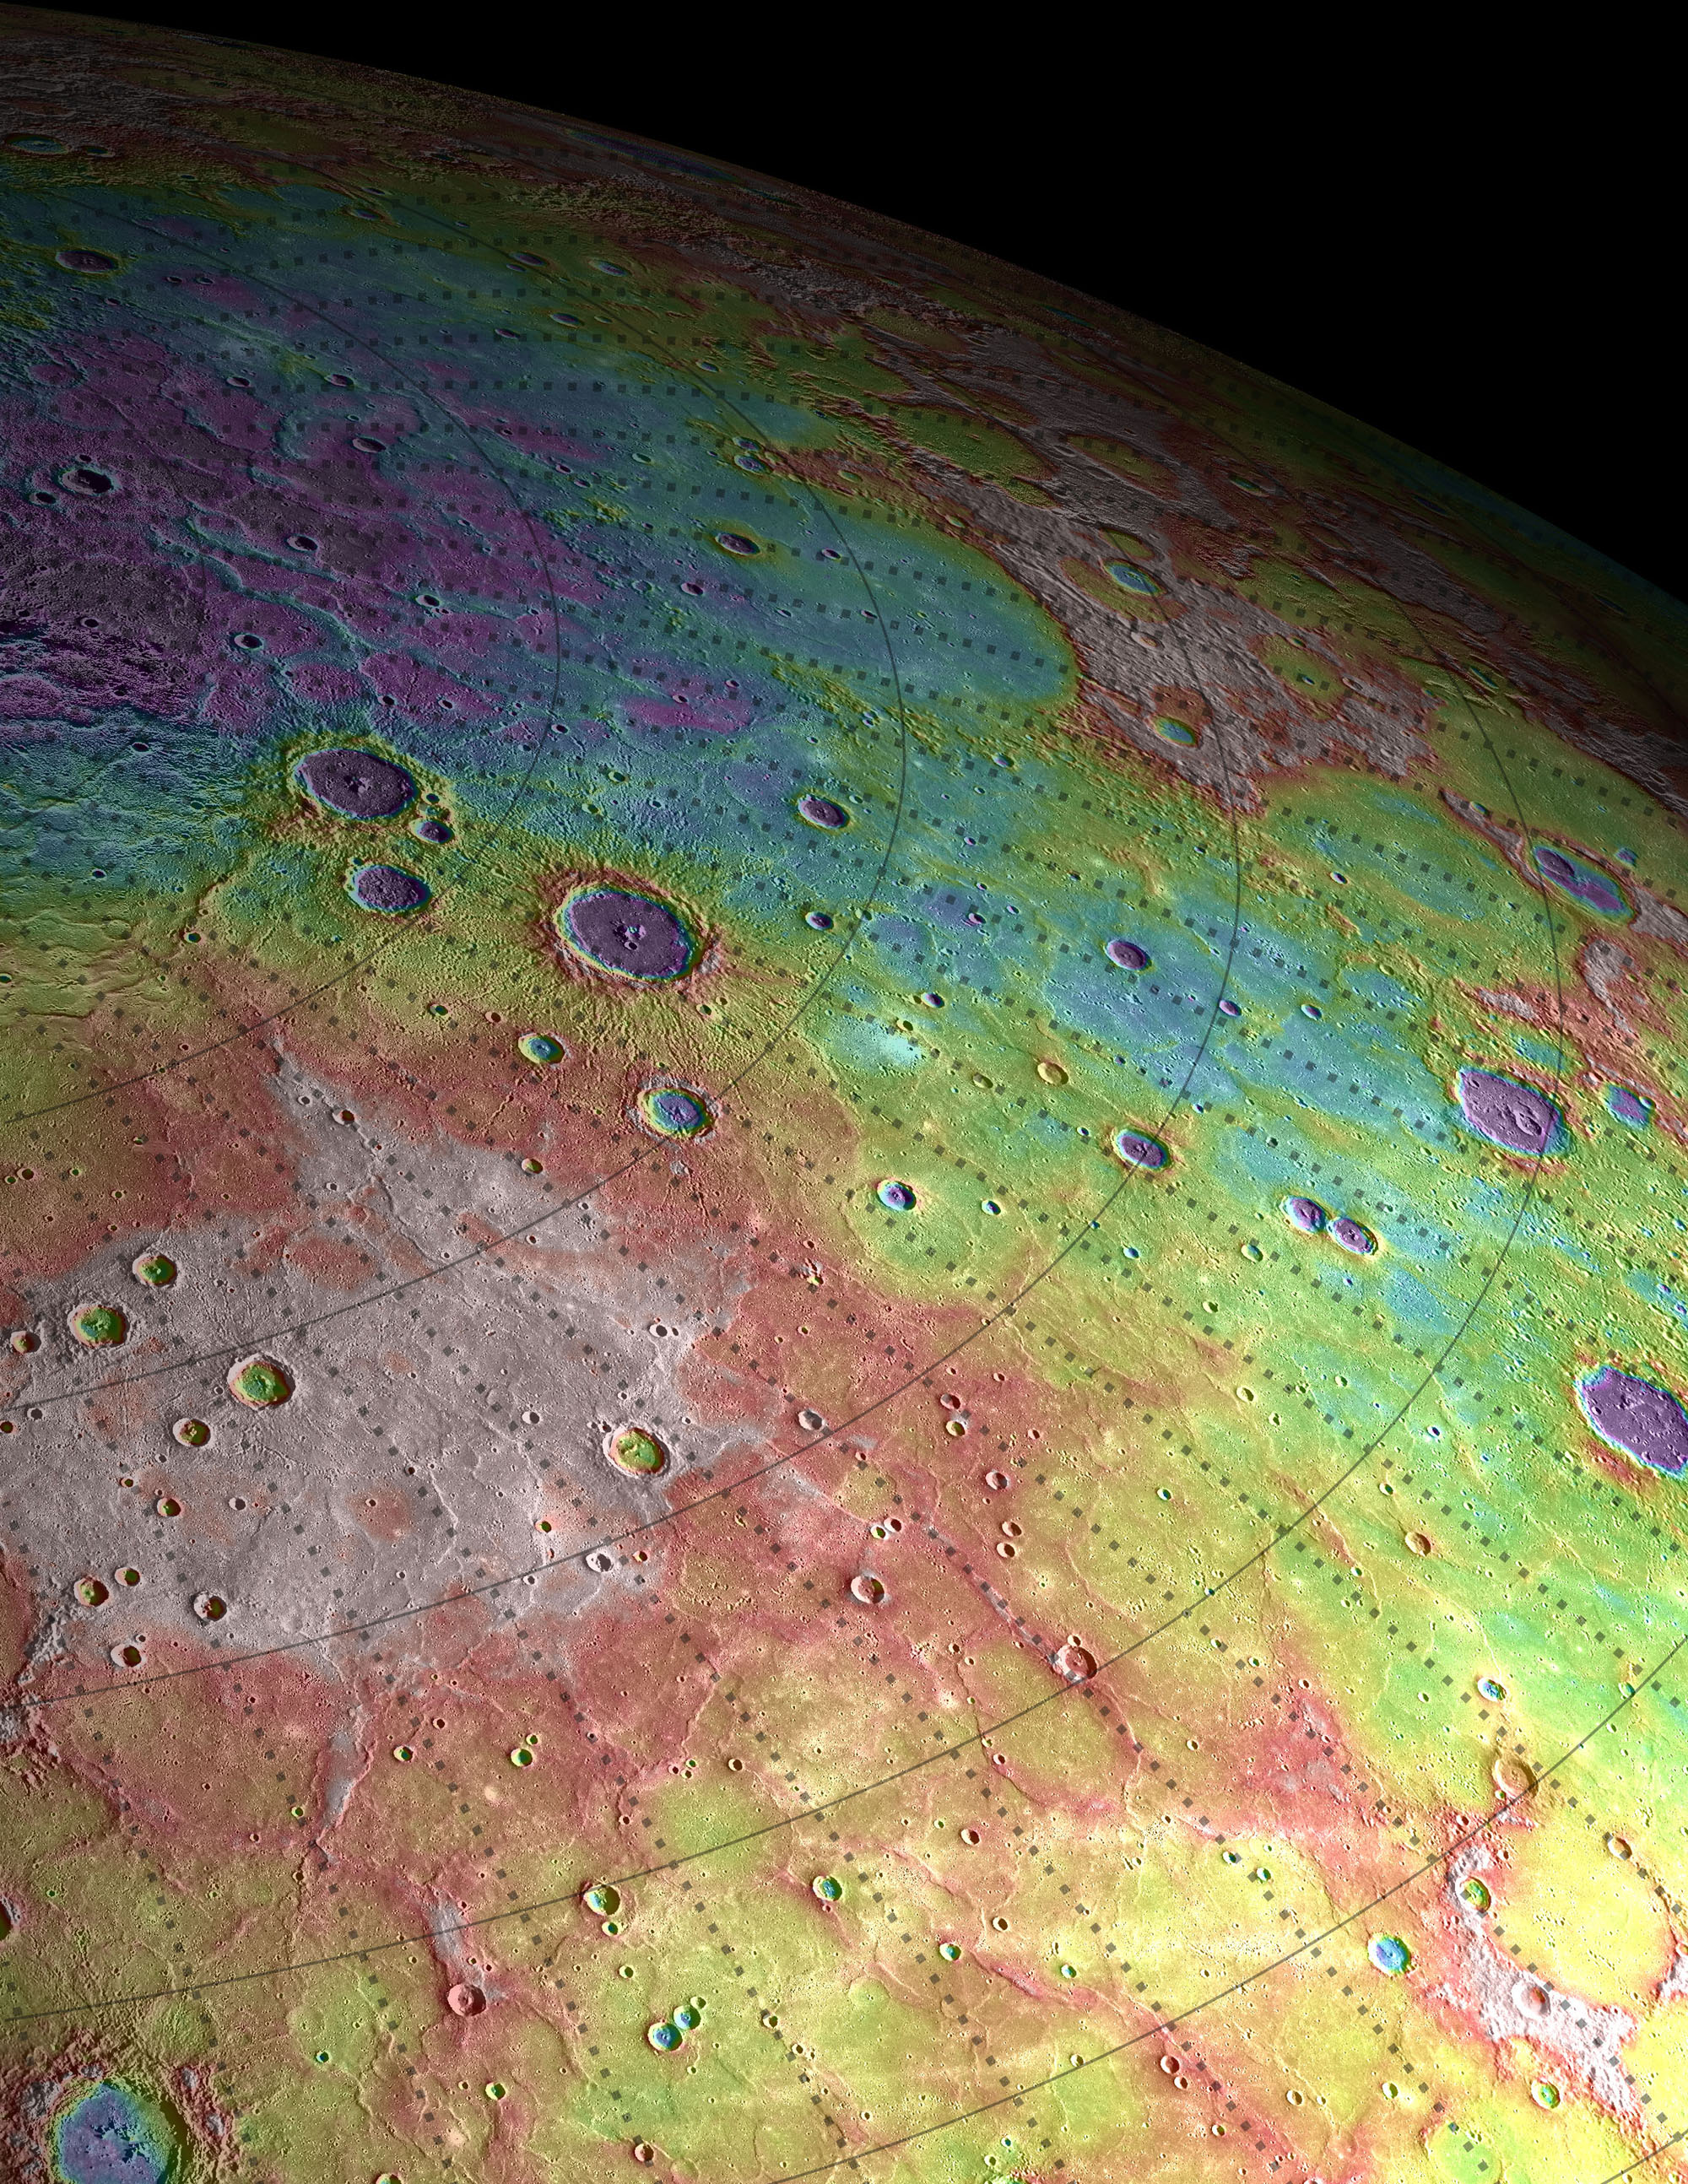 Imagen obtenida por Messenger de una región volcánica en Mercurio (el blanco indica regiones altas y el violeta bajas, en un rango de 2,3 kilómetros). NASA/JHUAPL/CIW-DTM/GSFC/MIT/Brown University. James Dickson y Jim Head.